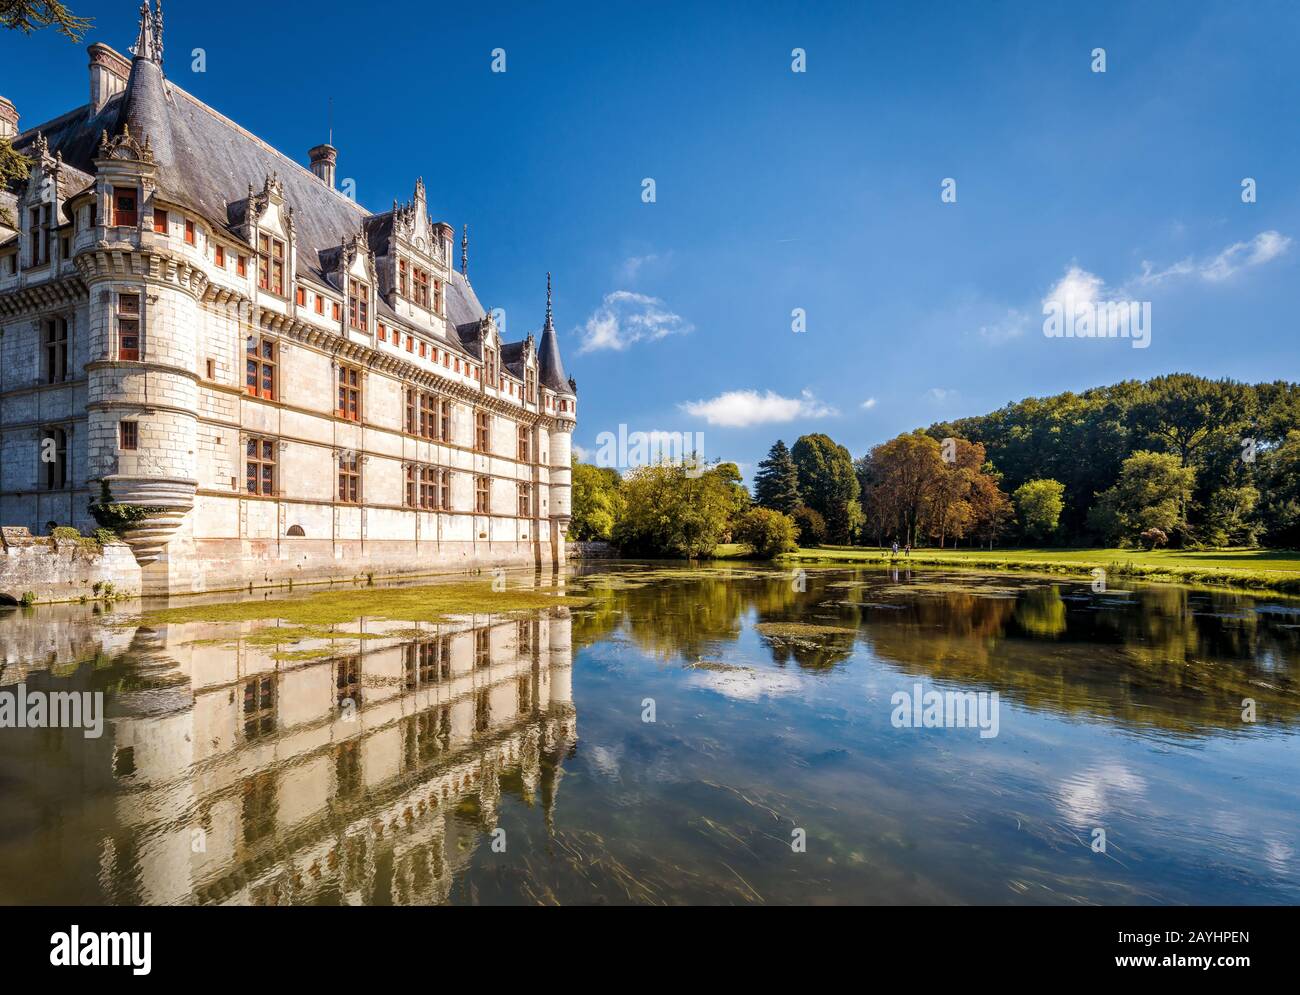 Il castello di Azay-le-Rideau, Francia. Questo castello si trova nella Valle della Loira, è stato costruito dal 1515 al 1527, uno dei primi Rinascimento francese Foto Stock